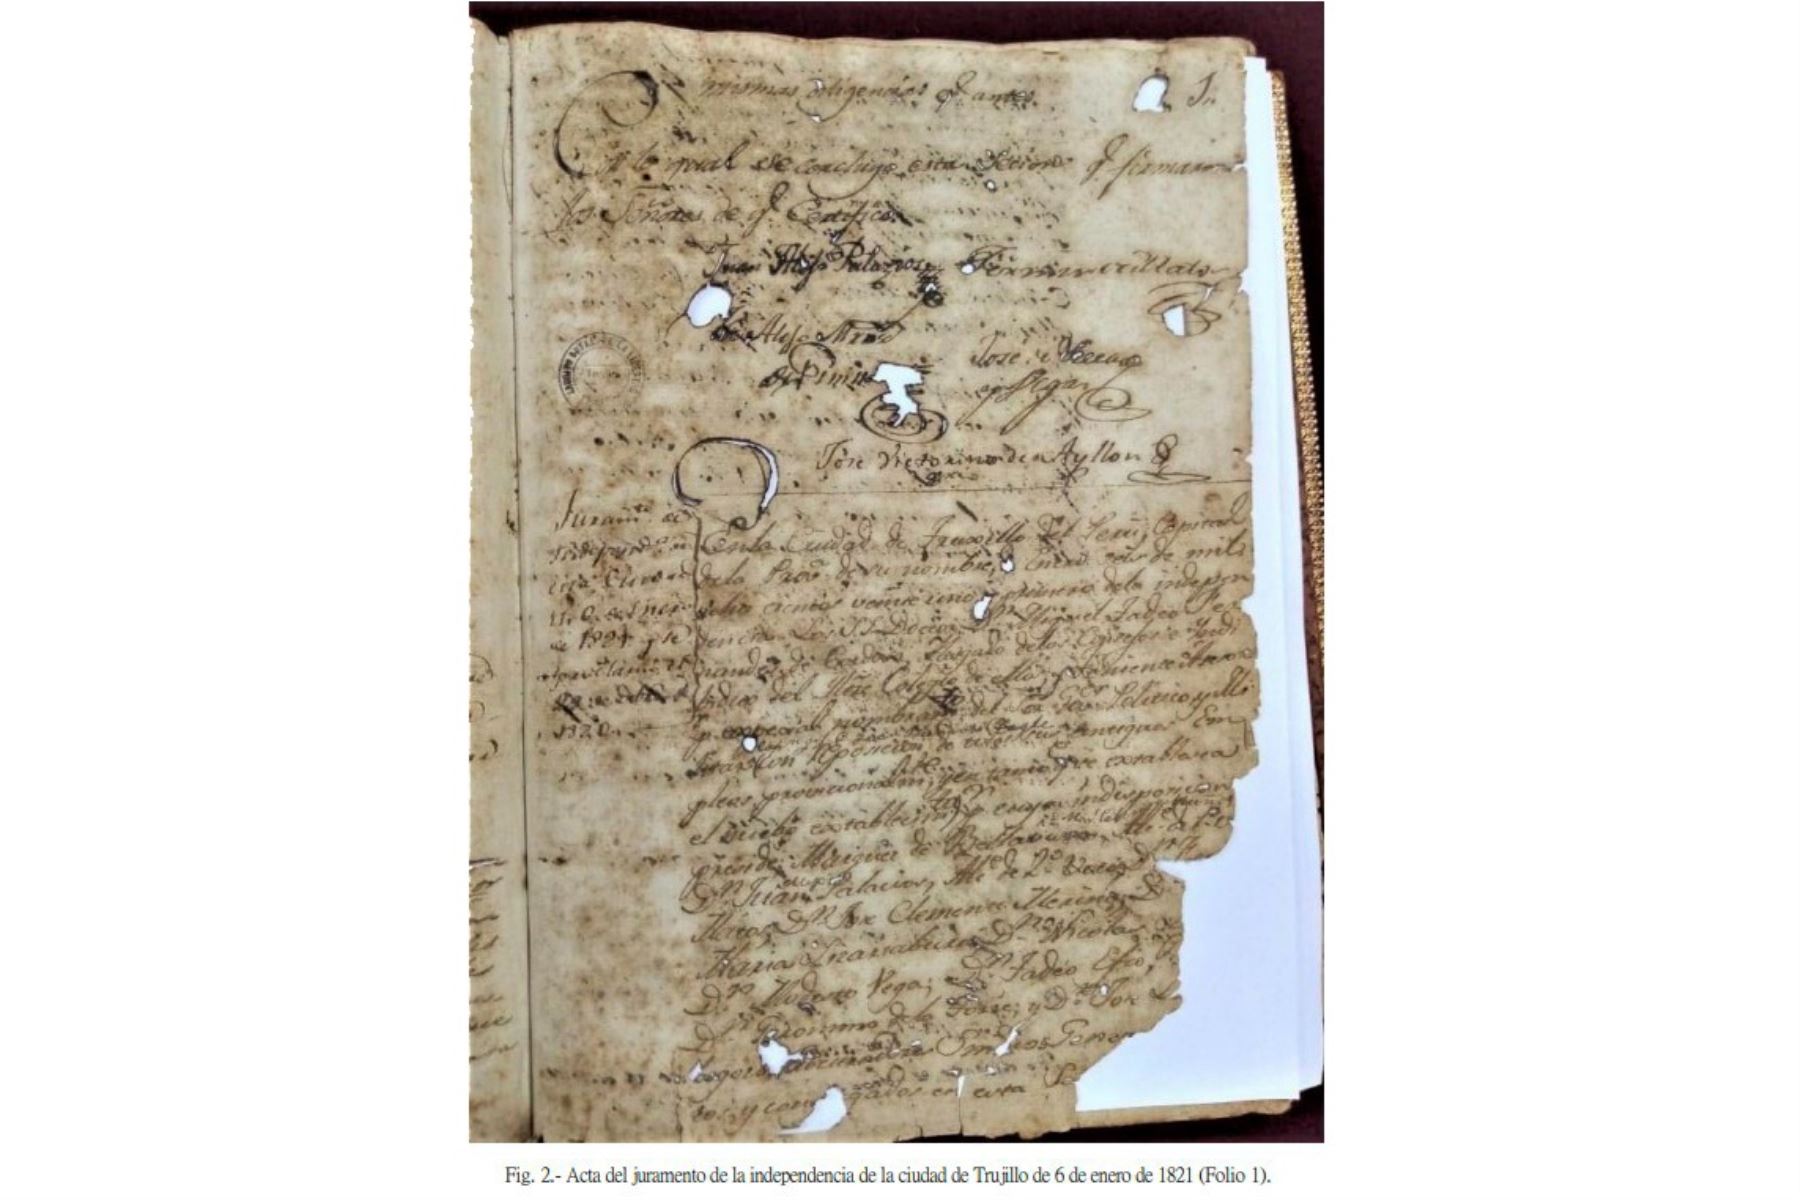 Este es el único documento en el cual se expresa, de forma legal y simbólica, la decisión del Cabildo de Trujillo de jurar y defender la independencia. Se encuentra en "El libro rojo". Foto: ANDINA/AGN